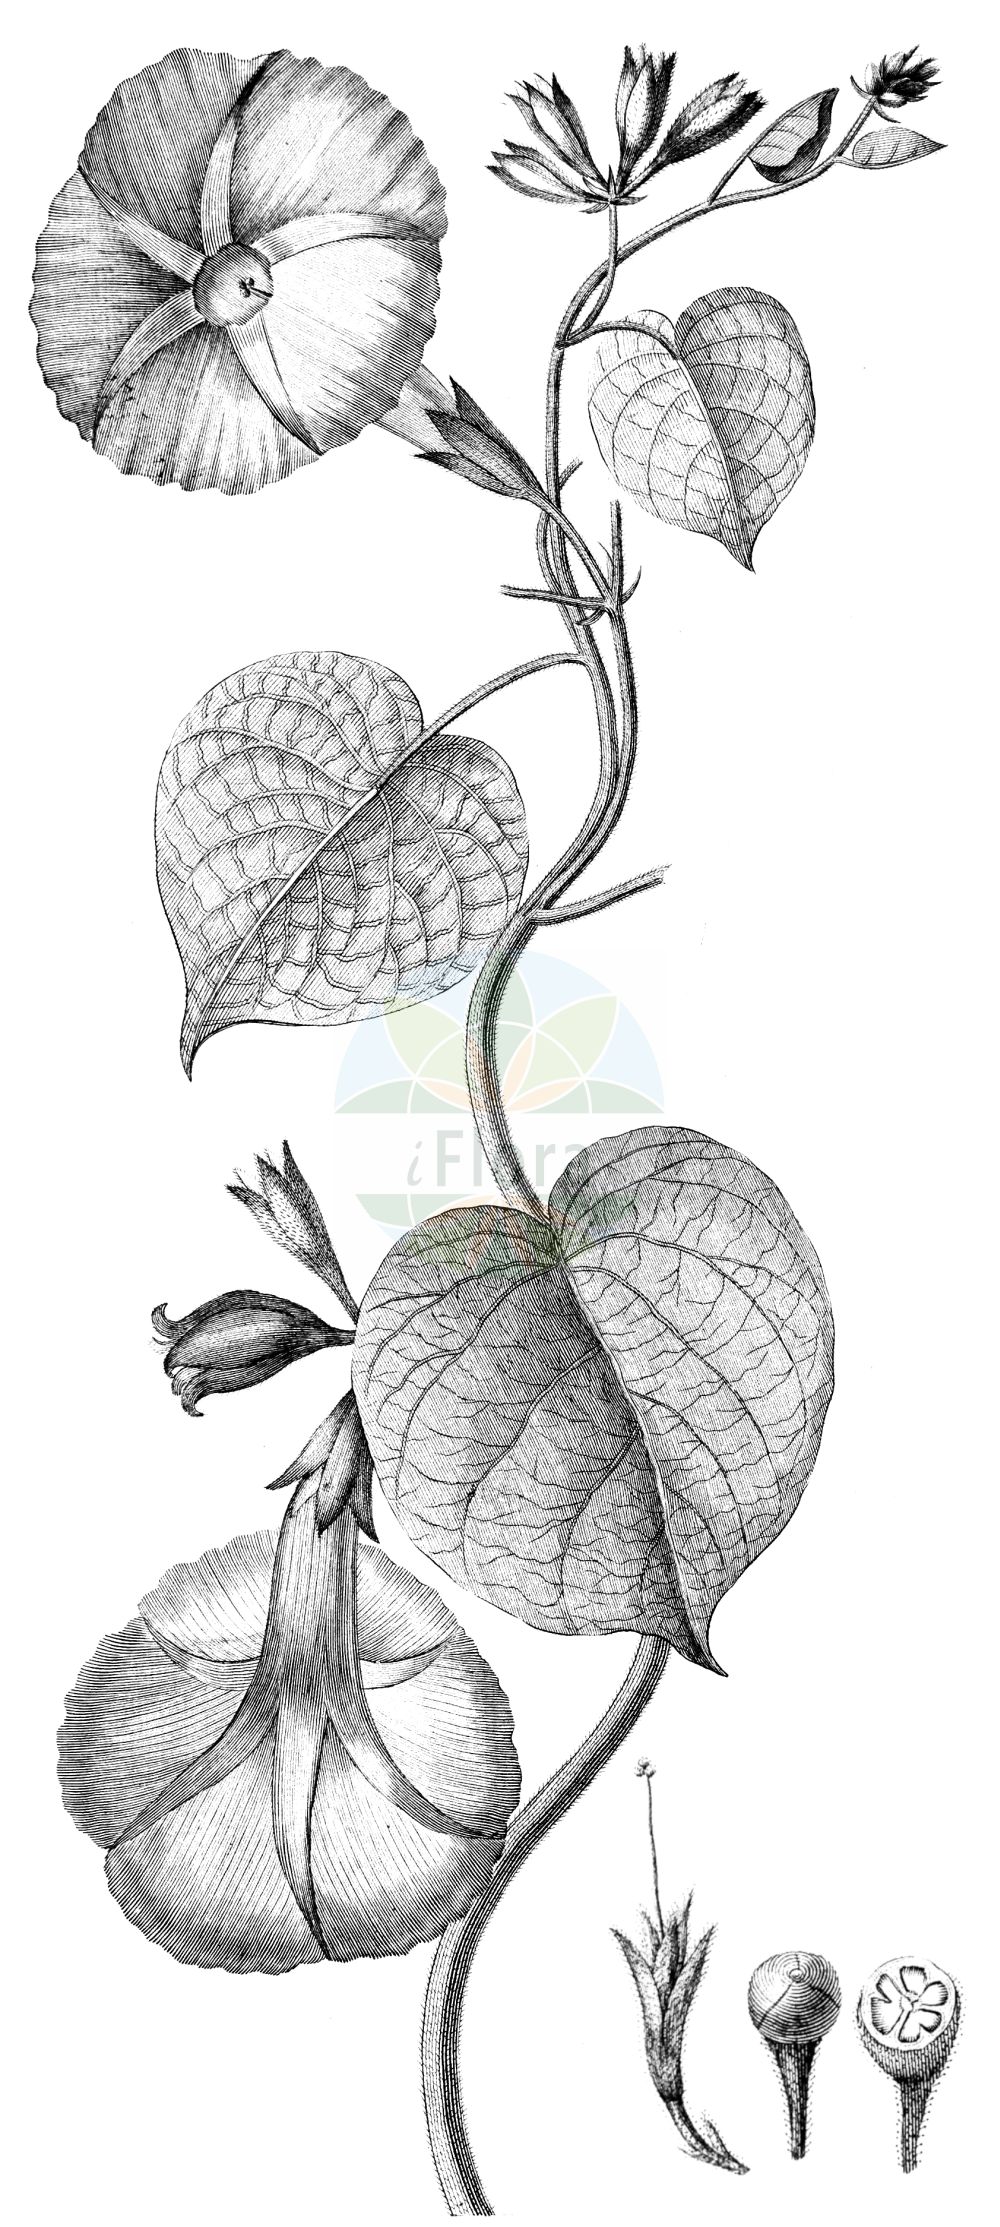 Historische Abbildung von Ipomoea purpurea. Das Bild zeigt Blatt, Bluete, Frucht und Same. ---- Historical Drawing of Ipomoea purpurea. The image is showing leaf, flower, fruit and seed.(Ipomoea purpurea,Convolvulus purpureus,Ipomoea purpurea,Pharbitis hispida,Pharbitis purpurea,Ipomoea,Convolvulaceae,Windengewächse,Bindweed family,Blatt,Bluete,Frucht,Same,leaf,flower,fruit,seed,Pavón y Jiménez-Villanueva & Ruiz López (1798))